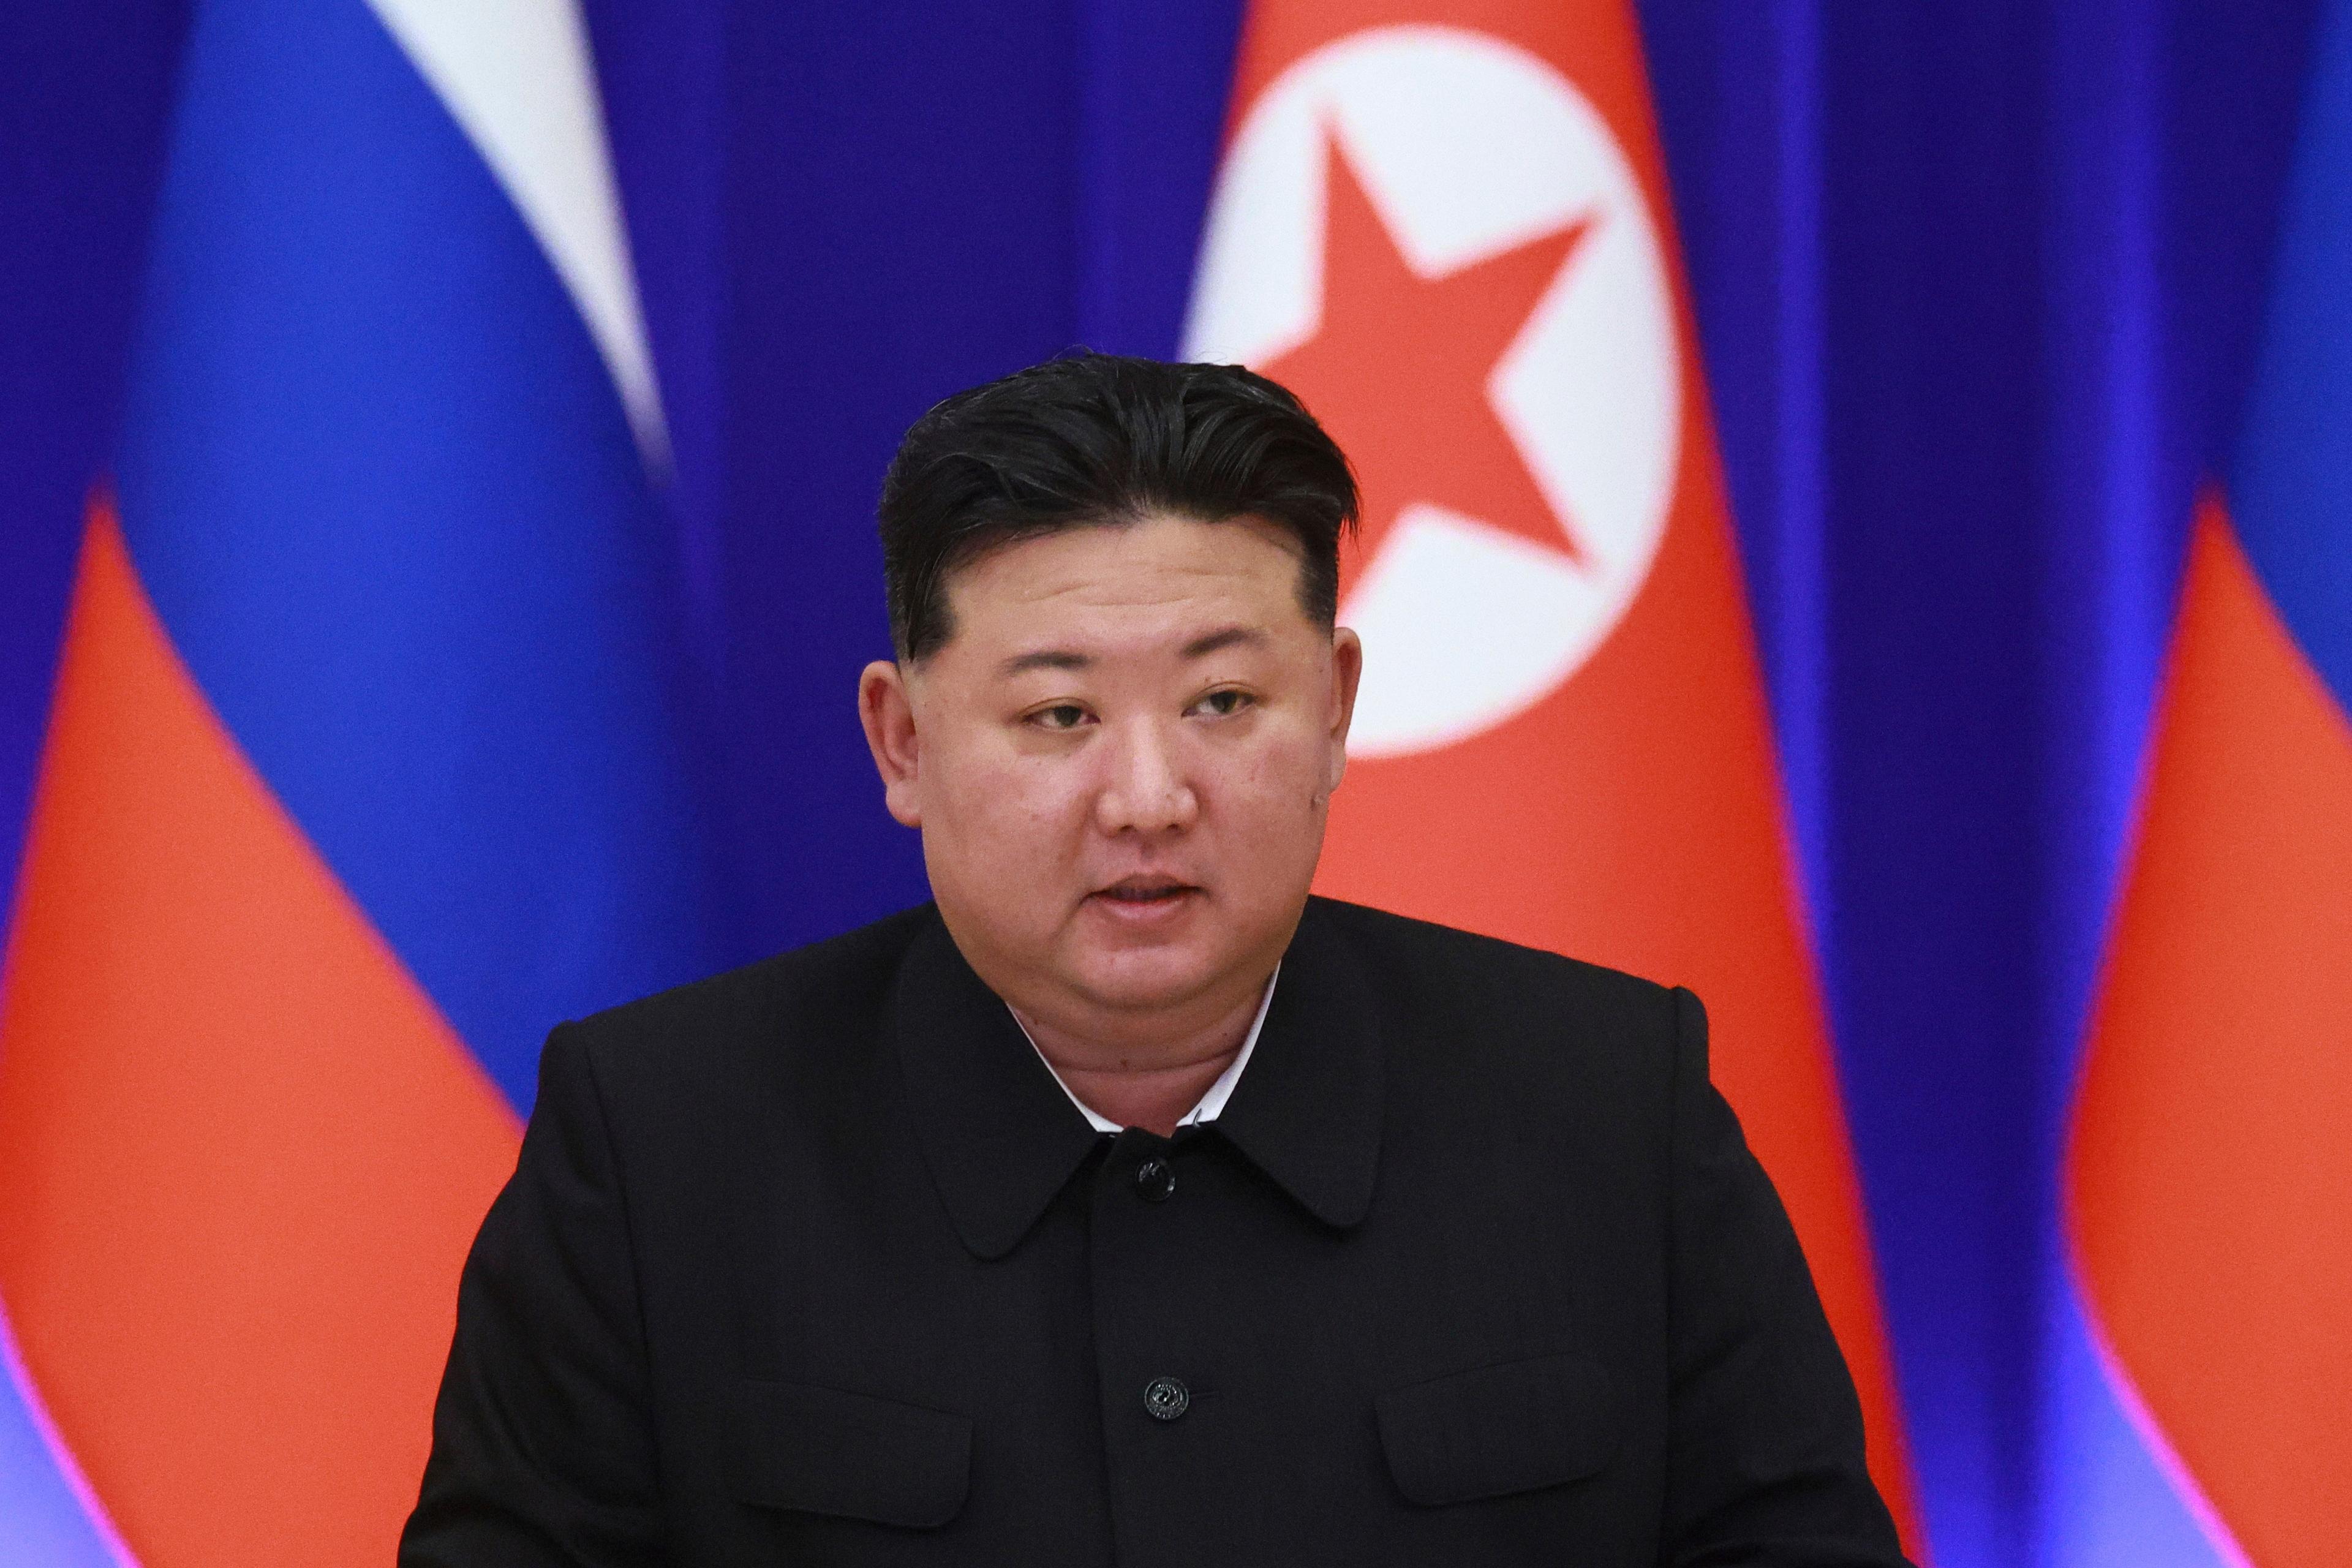 Nordkoreas ledare Kim Jong-Un. Arkivbild. Foto: Vladimir Smirnov/Sputnik/AP/TT